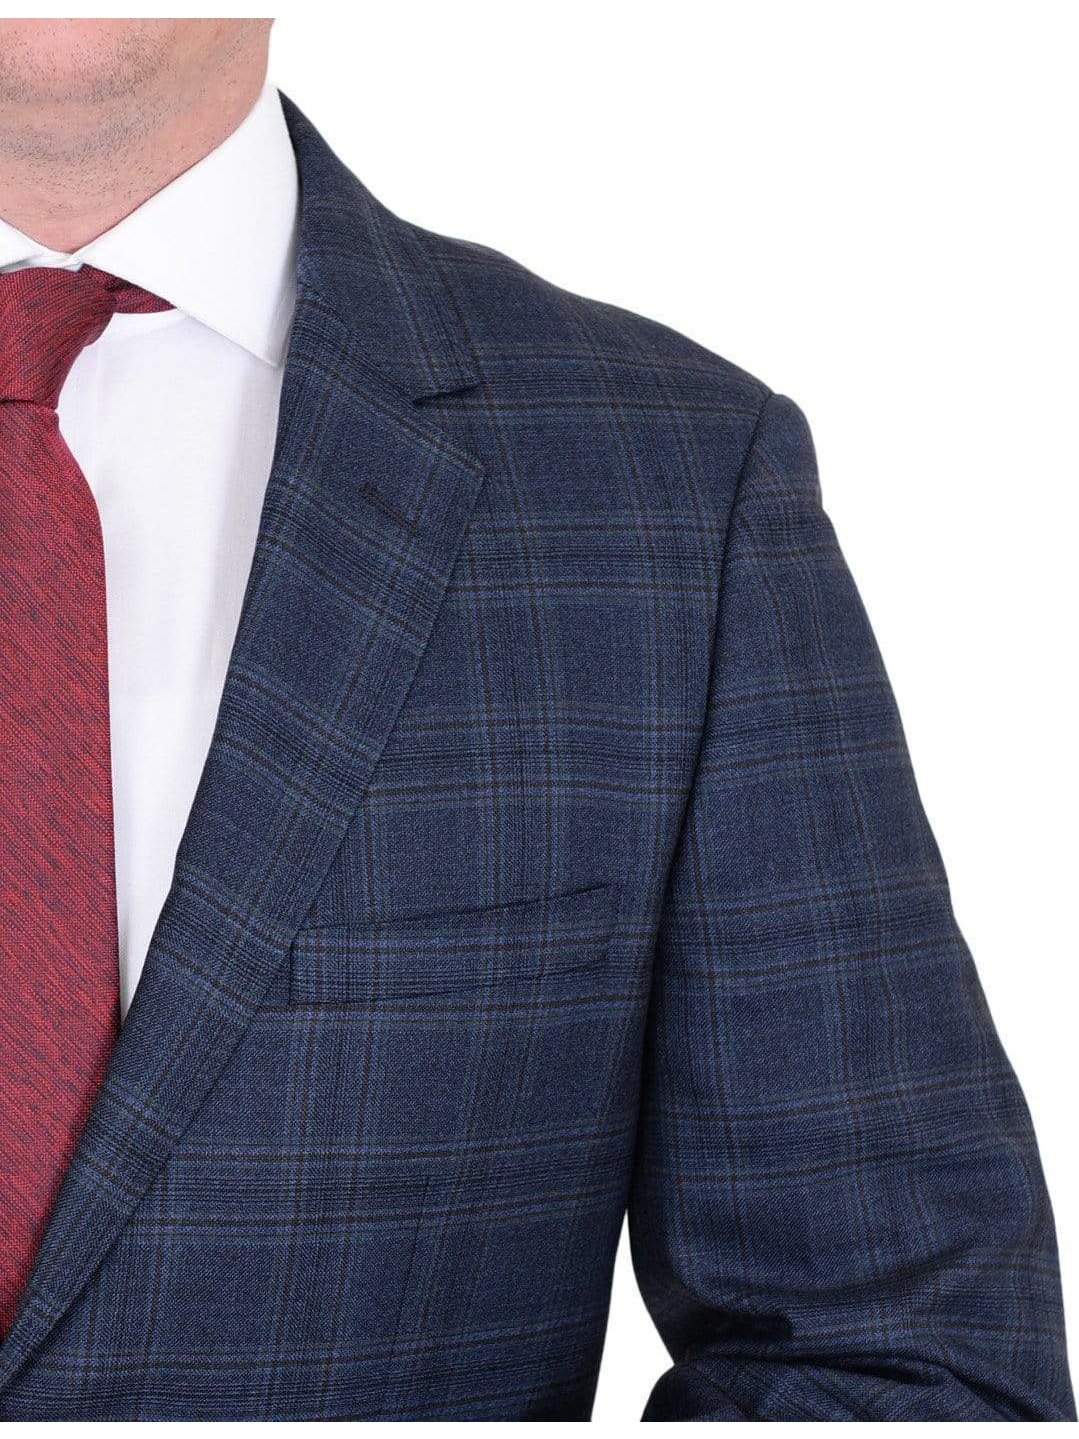 Label E Sale Suits Mens Modern Fit Blue Plaid Two Button Wool Suit